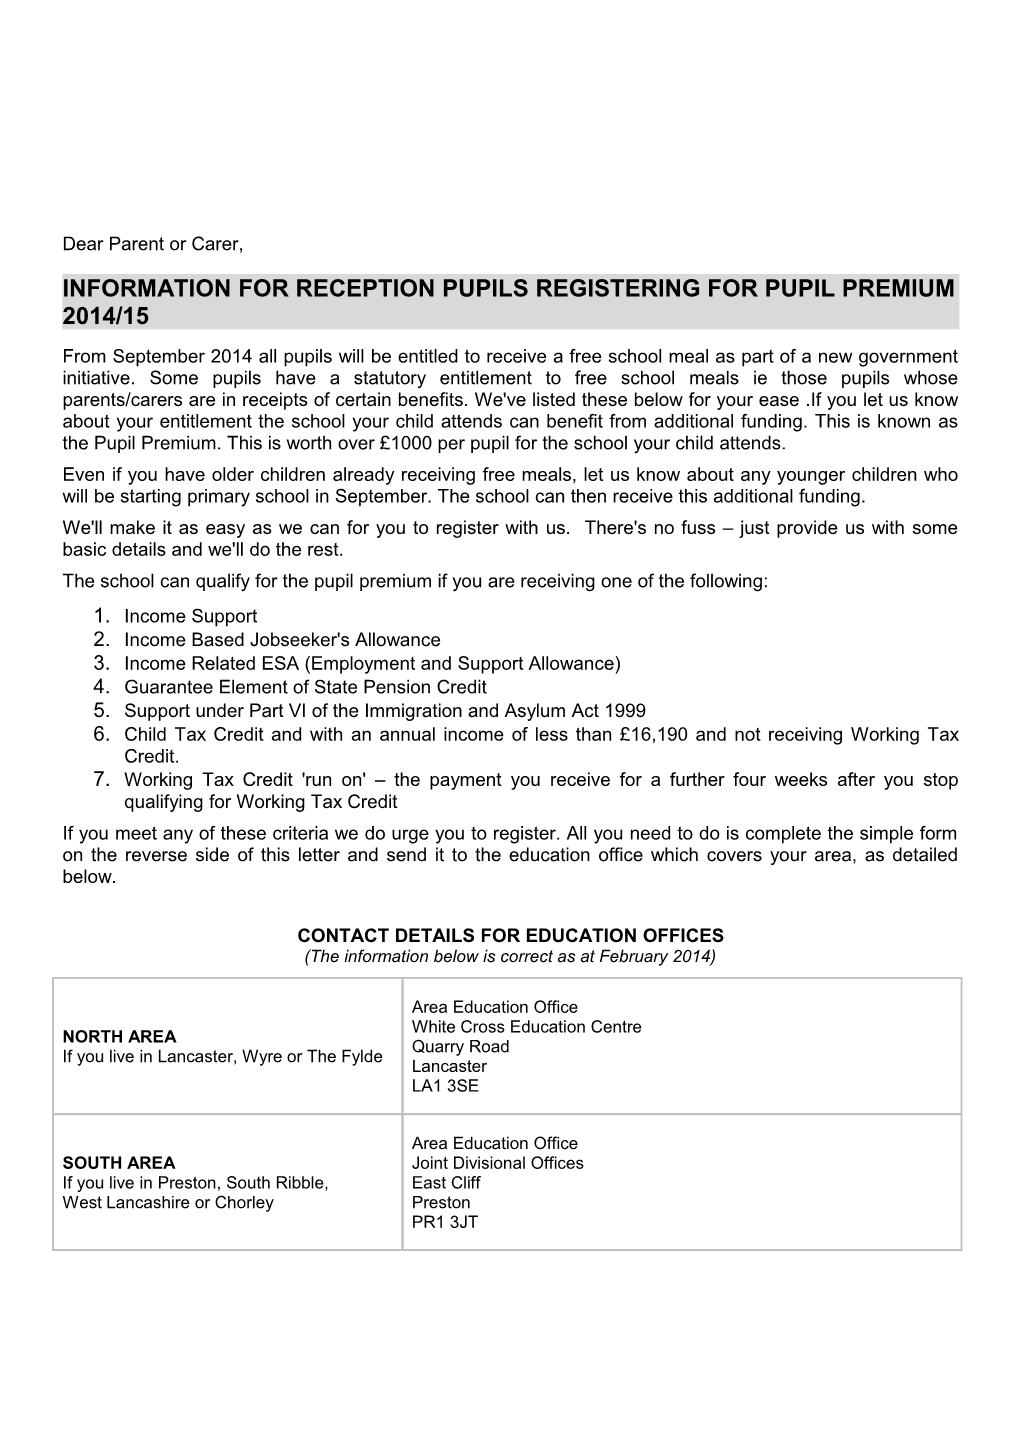 Information for Reception Pupils Registering for Pupil Premium2014/15